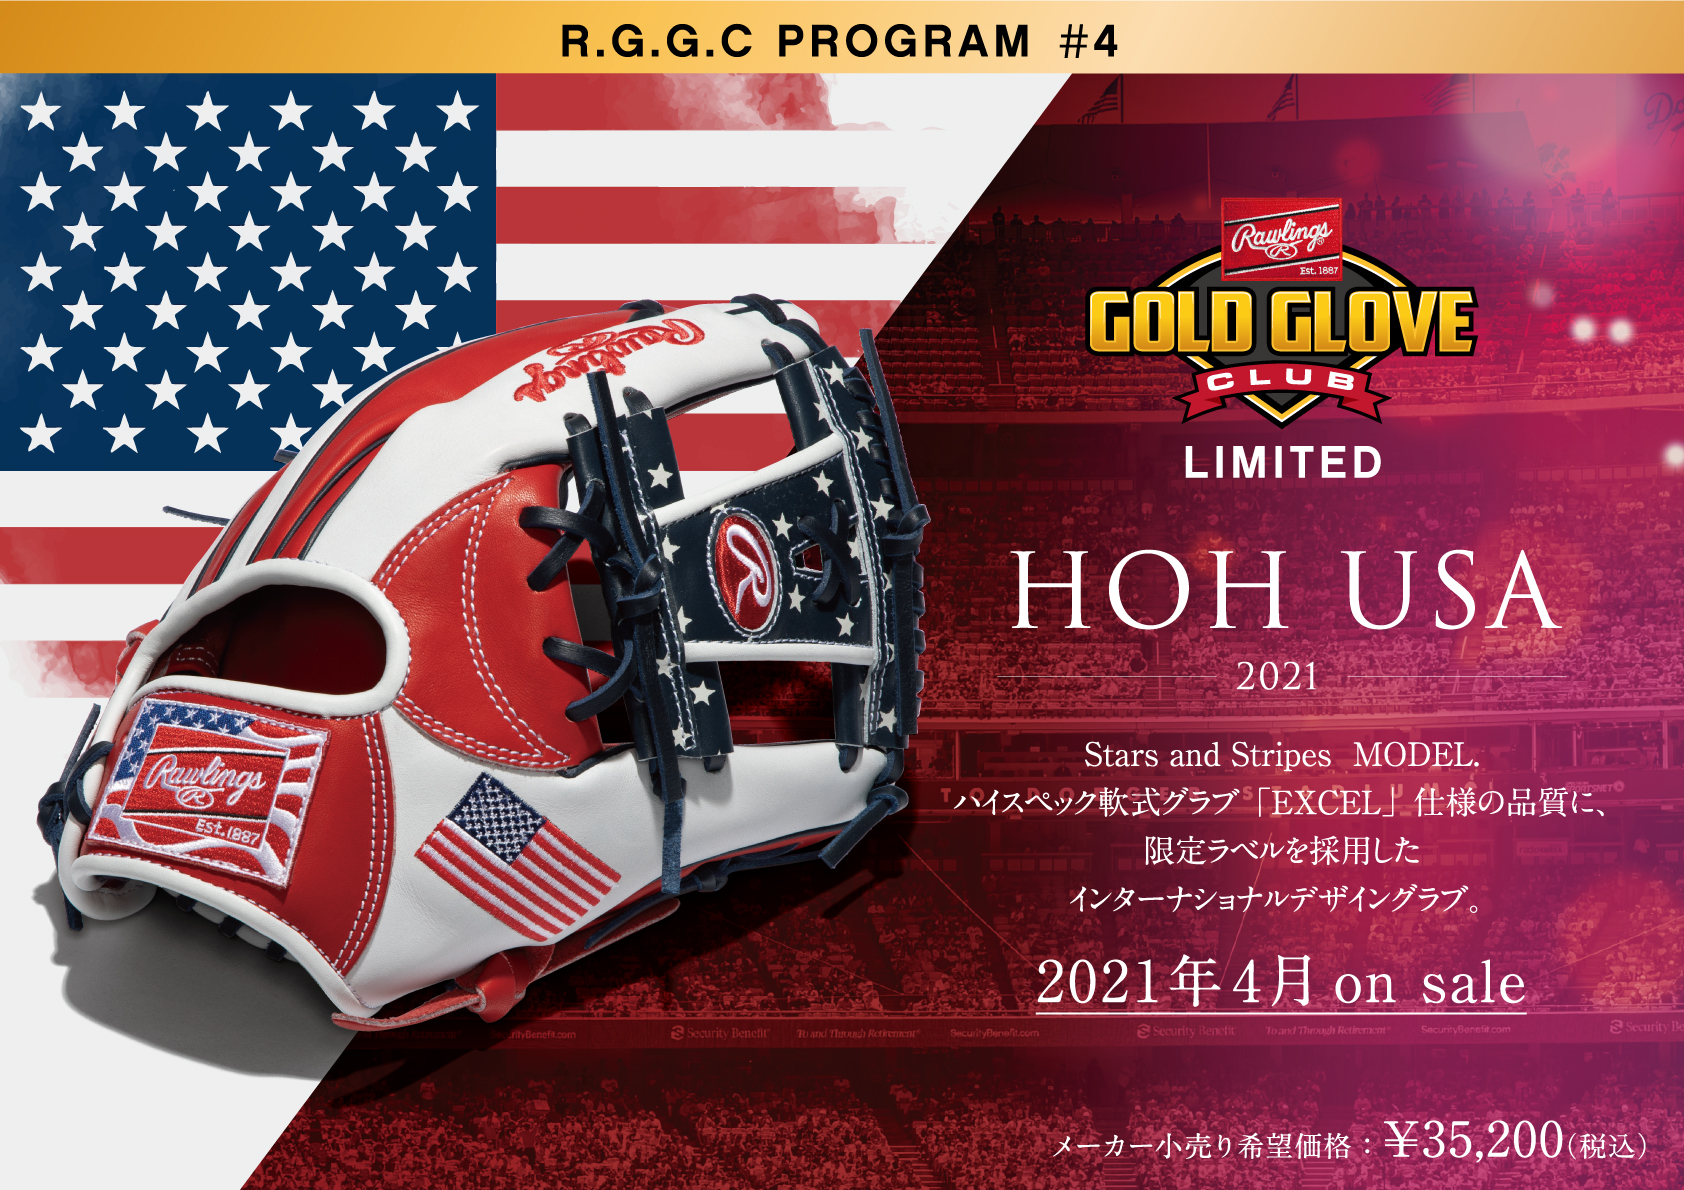 限定ラベルを採用したRGGCグラブ第四弾「HOH® USA」が登場